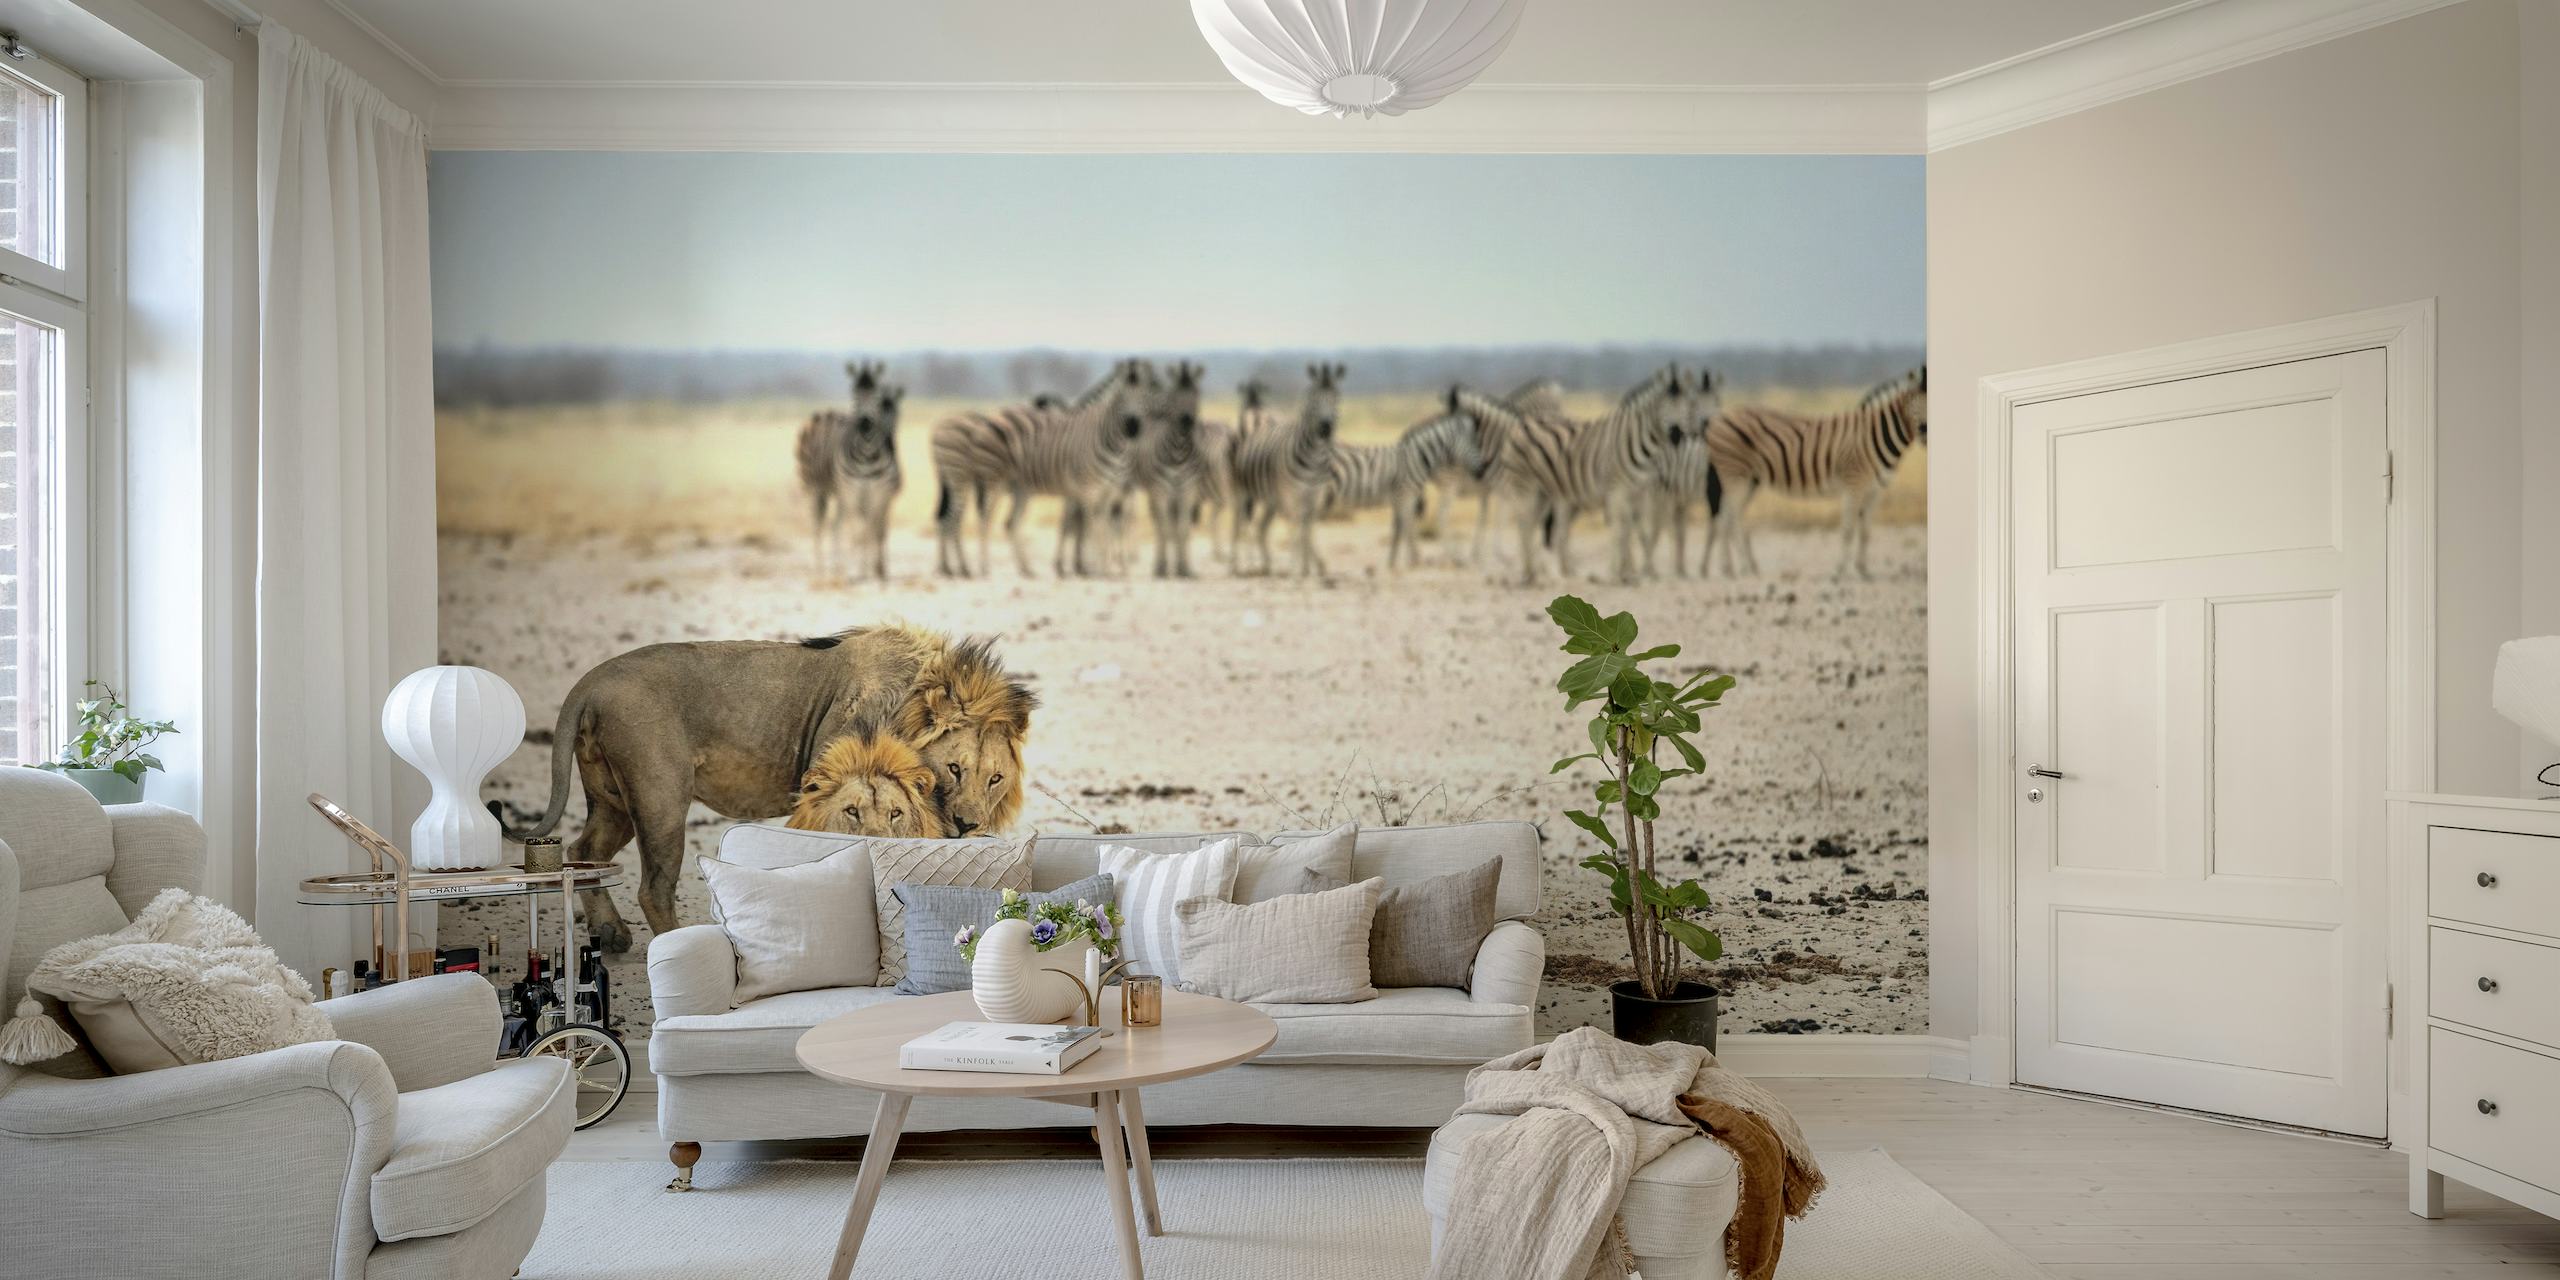 Lew i zebry w afrykańskiej sawannie fototapeta